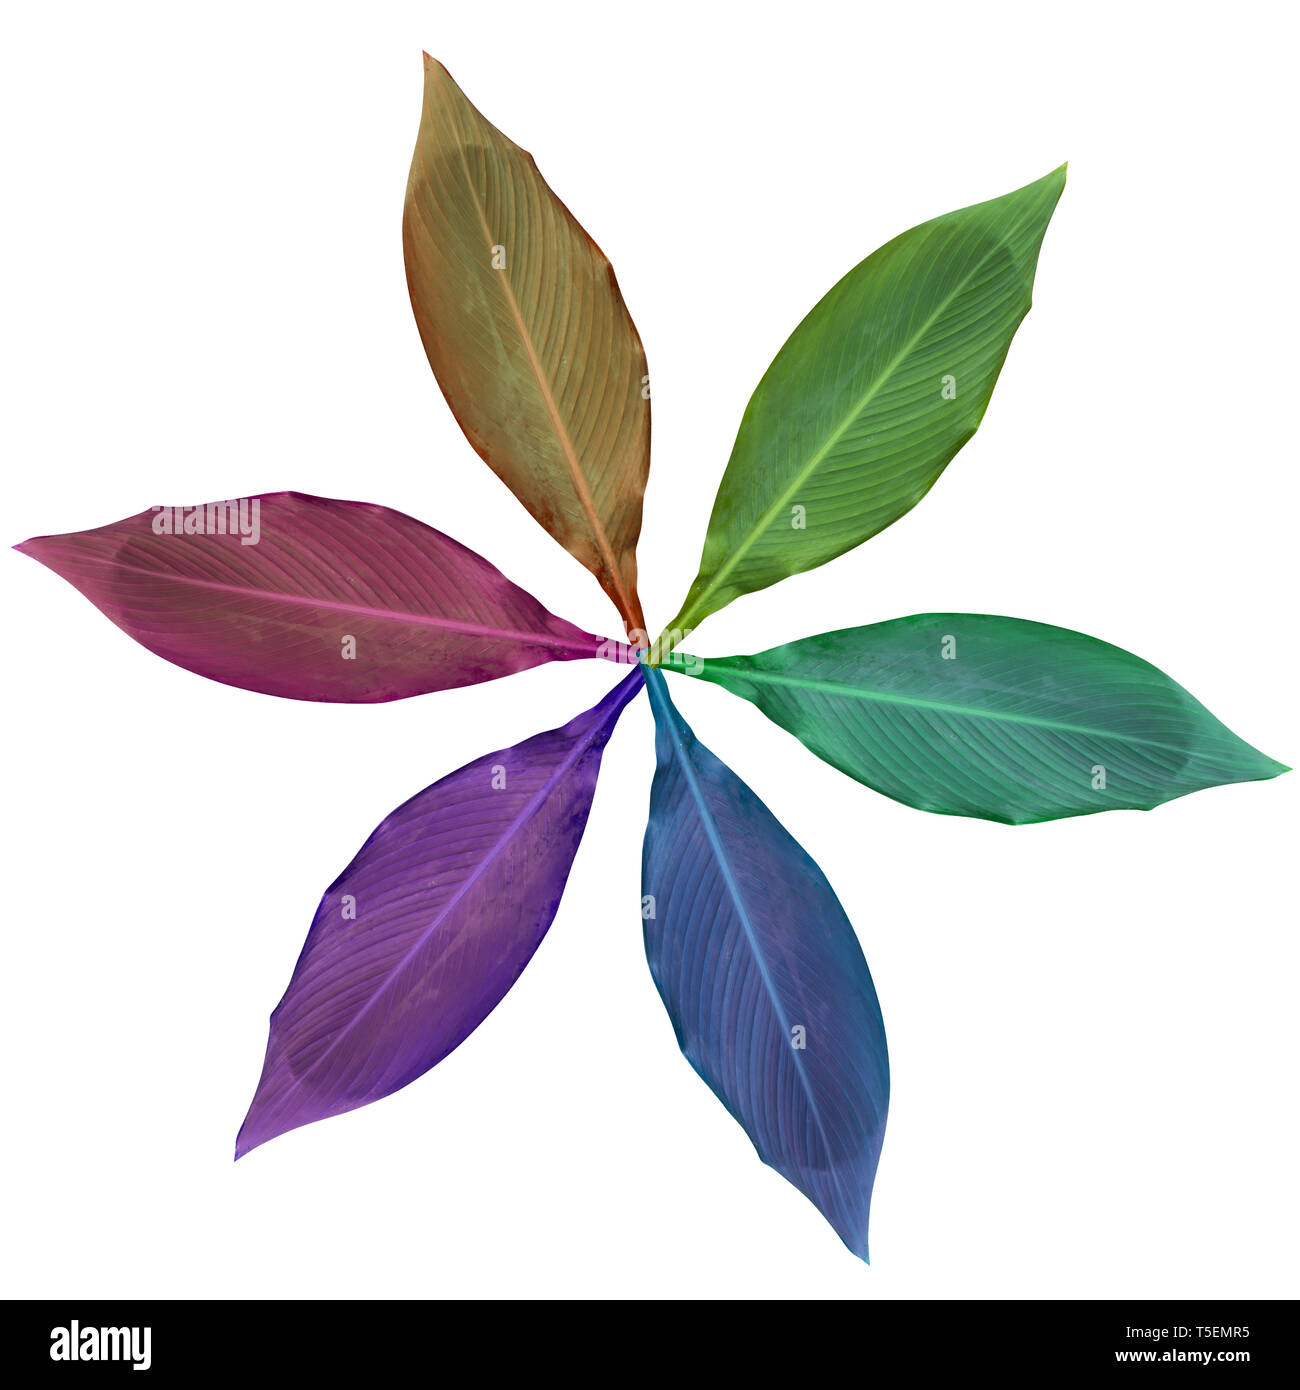 Arco iris de colores mejorada digitalmente las imágenes de seis hojas dispuestas en un diseño circular Foto de stock